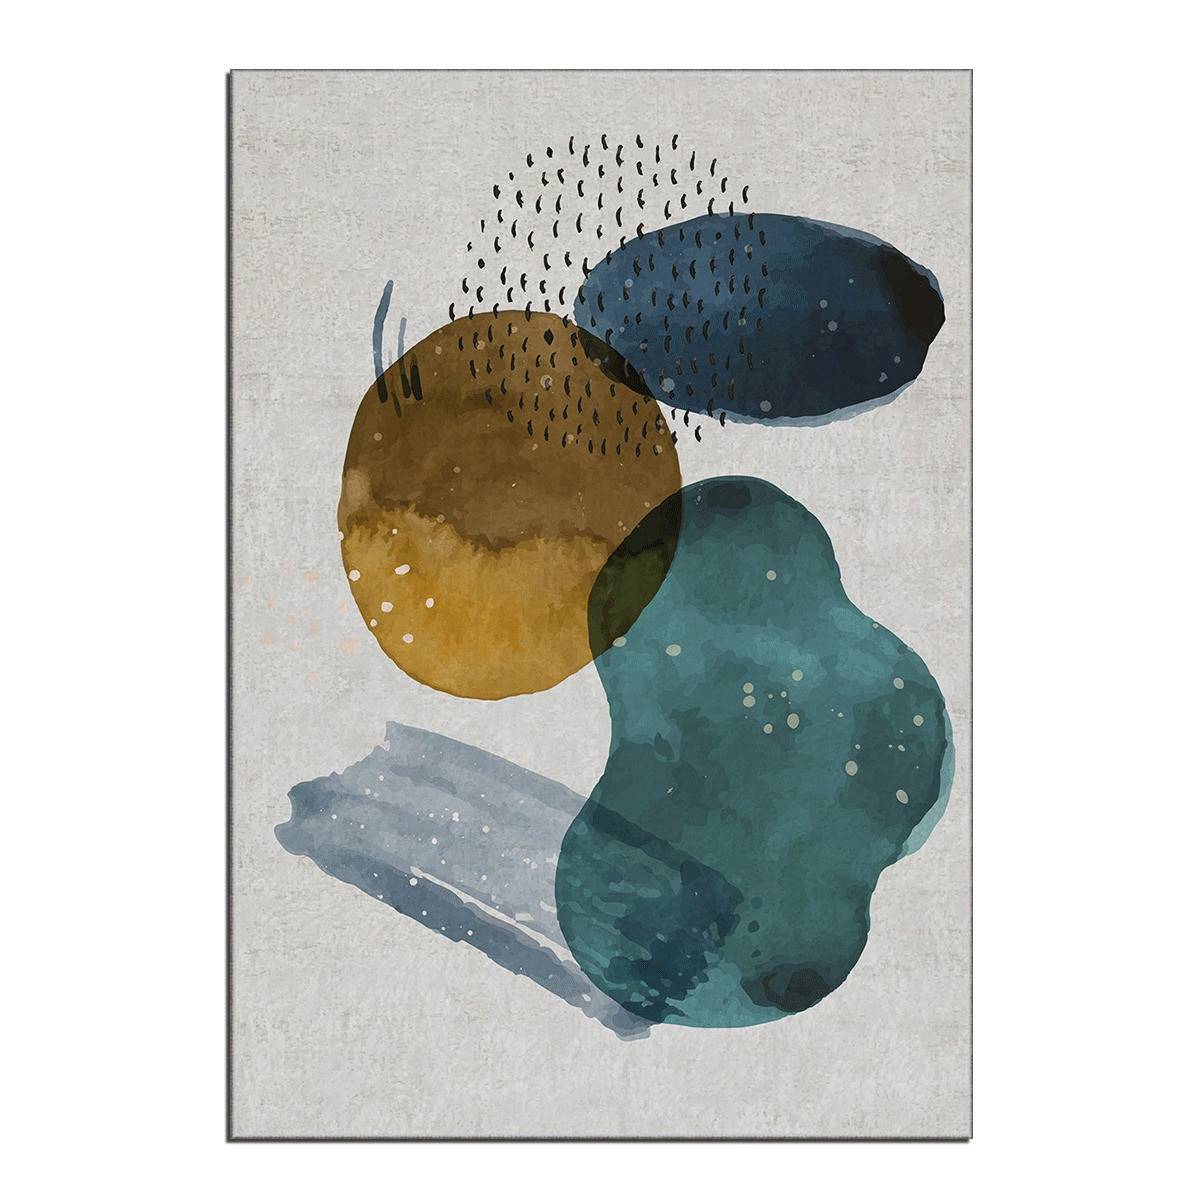 Eben tapijt 100x140cm Abstract patroon geel, blauw en groen